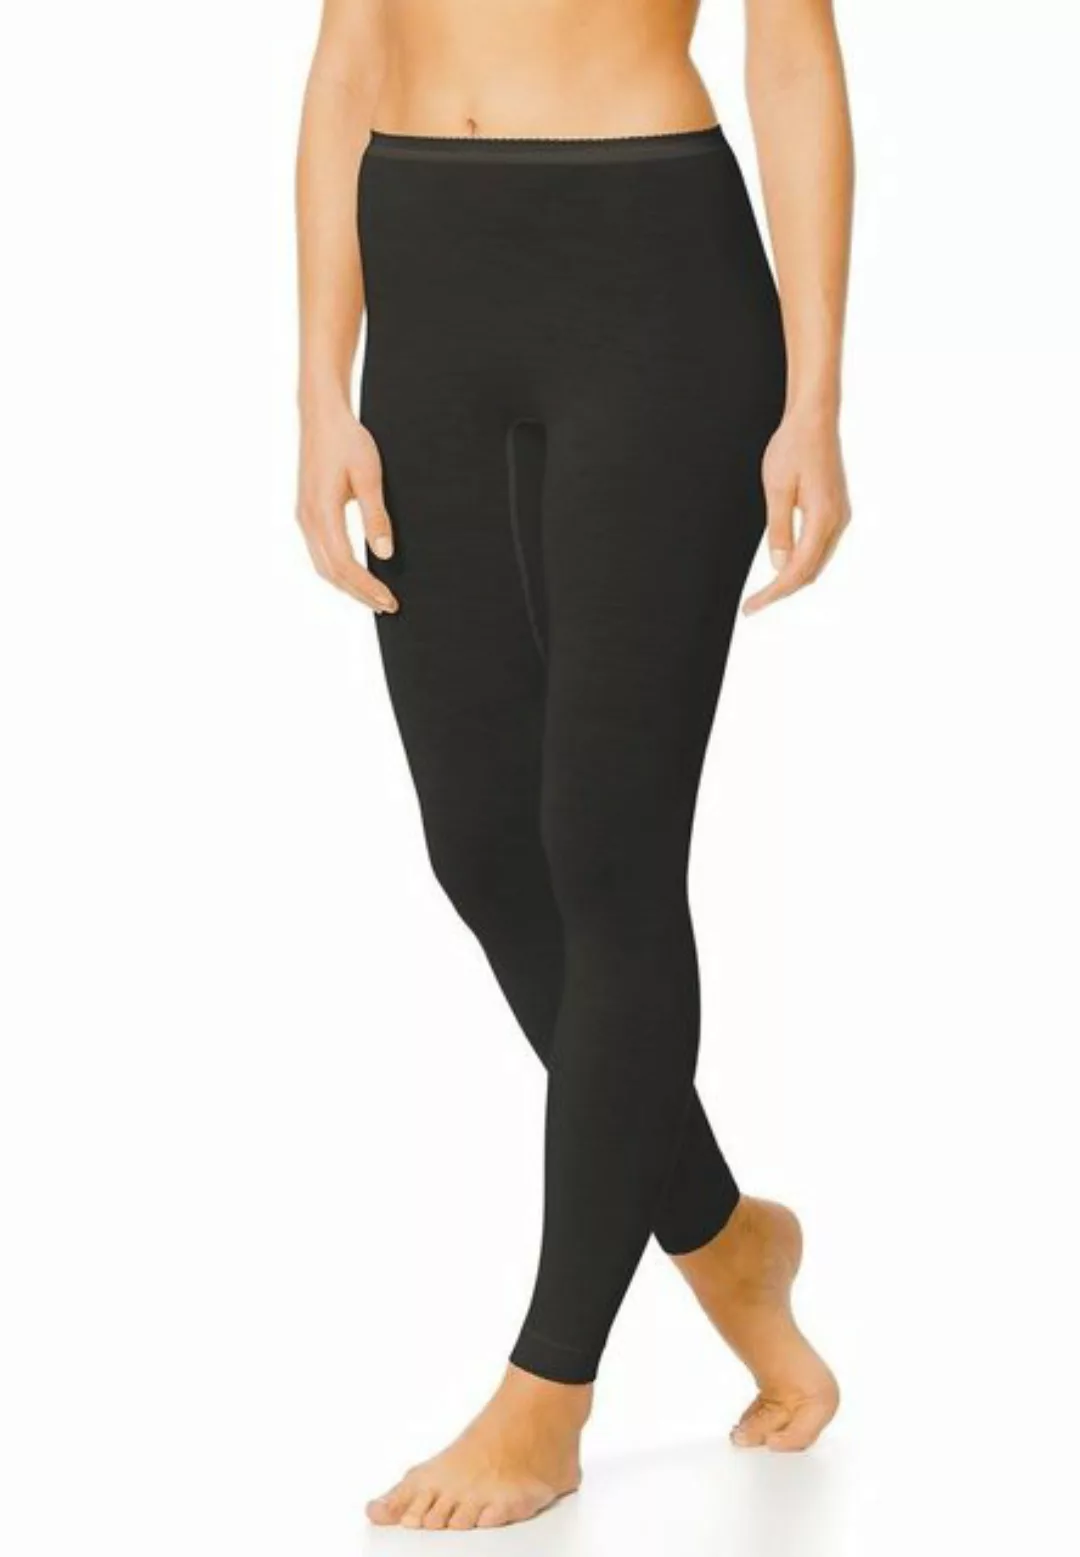 Mey Yogahose Damen Leggings Merino-Wolle / Seide SERIE EXQUISITE günstig online kaufen